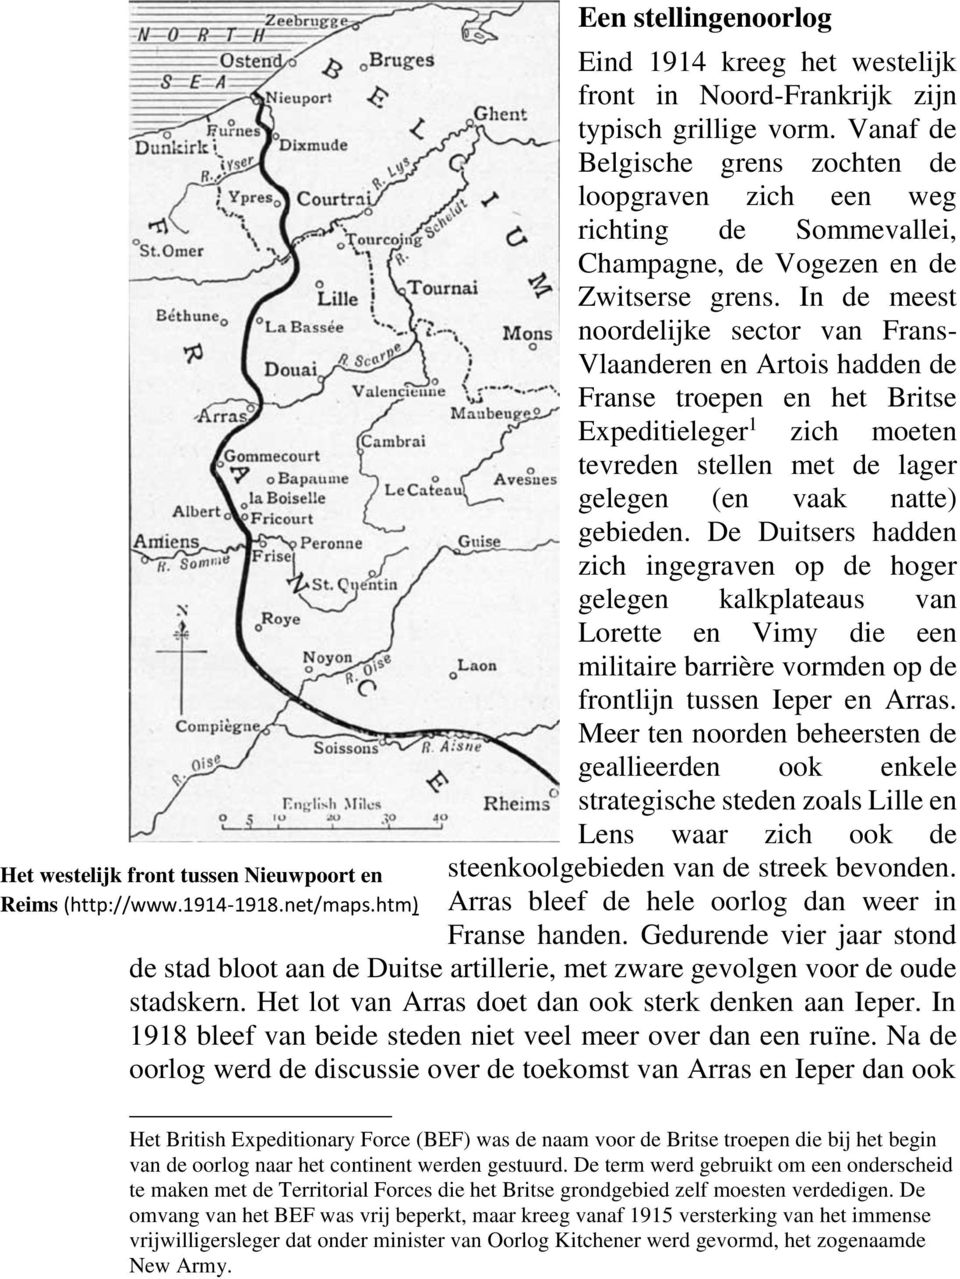 In de meest noordelijke sector van Frans- Vlaanderen en Artois hadden de Franse troepen en het Britse Expeditieleger 1 zich moeten tevreden stellen met de lager gelegen (en vaak natte) gebieden.